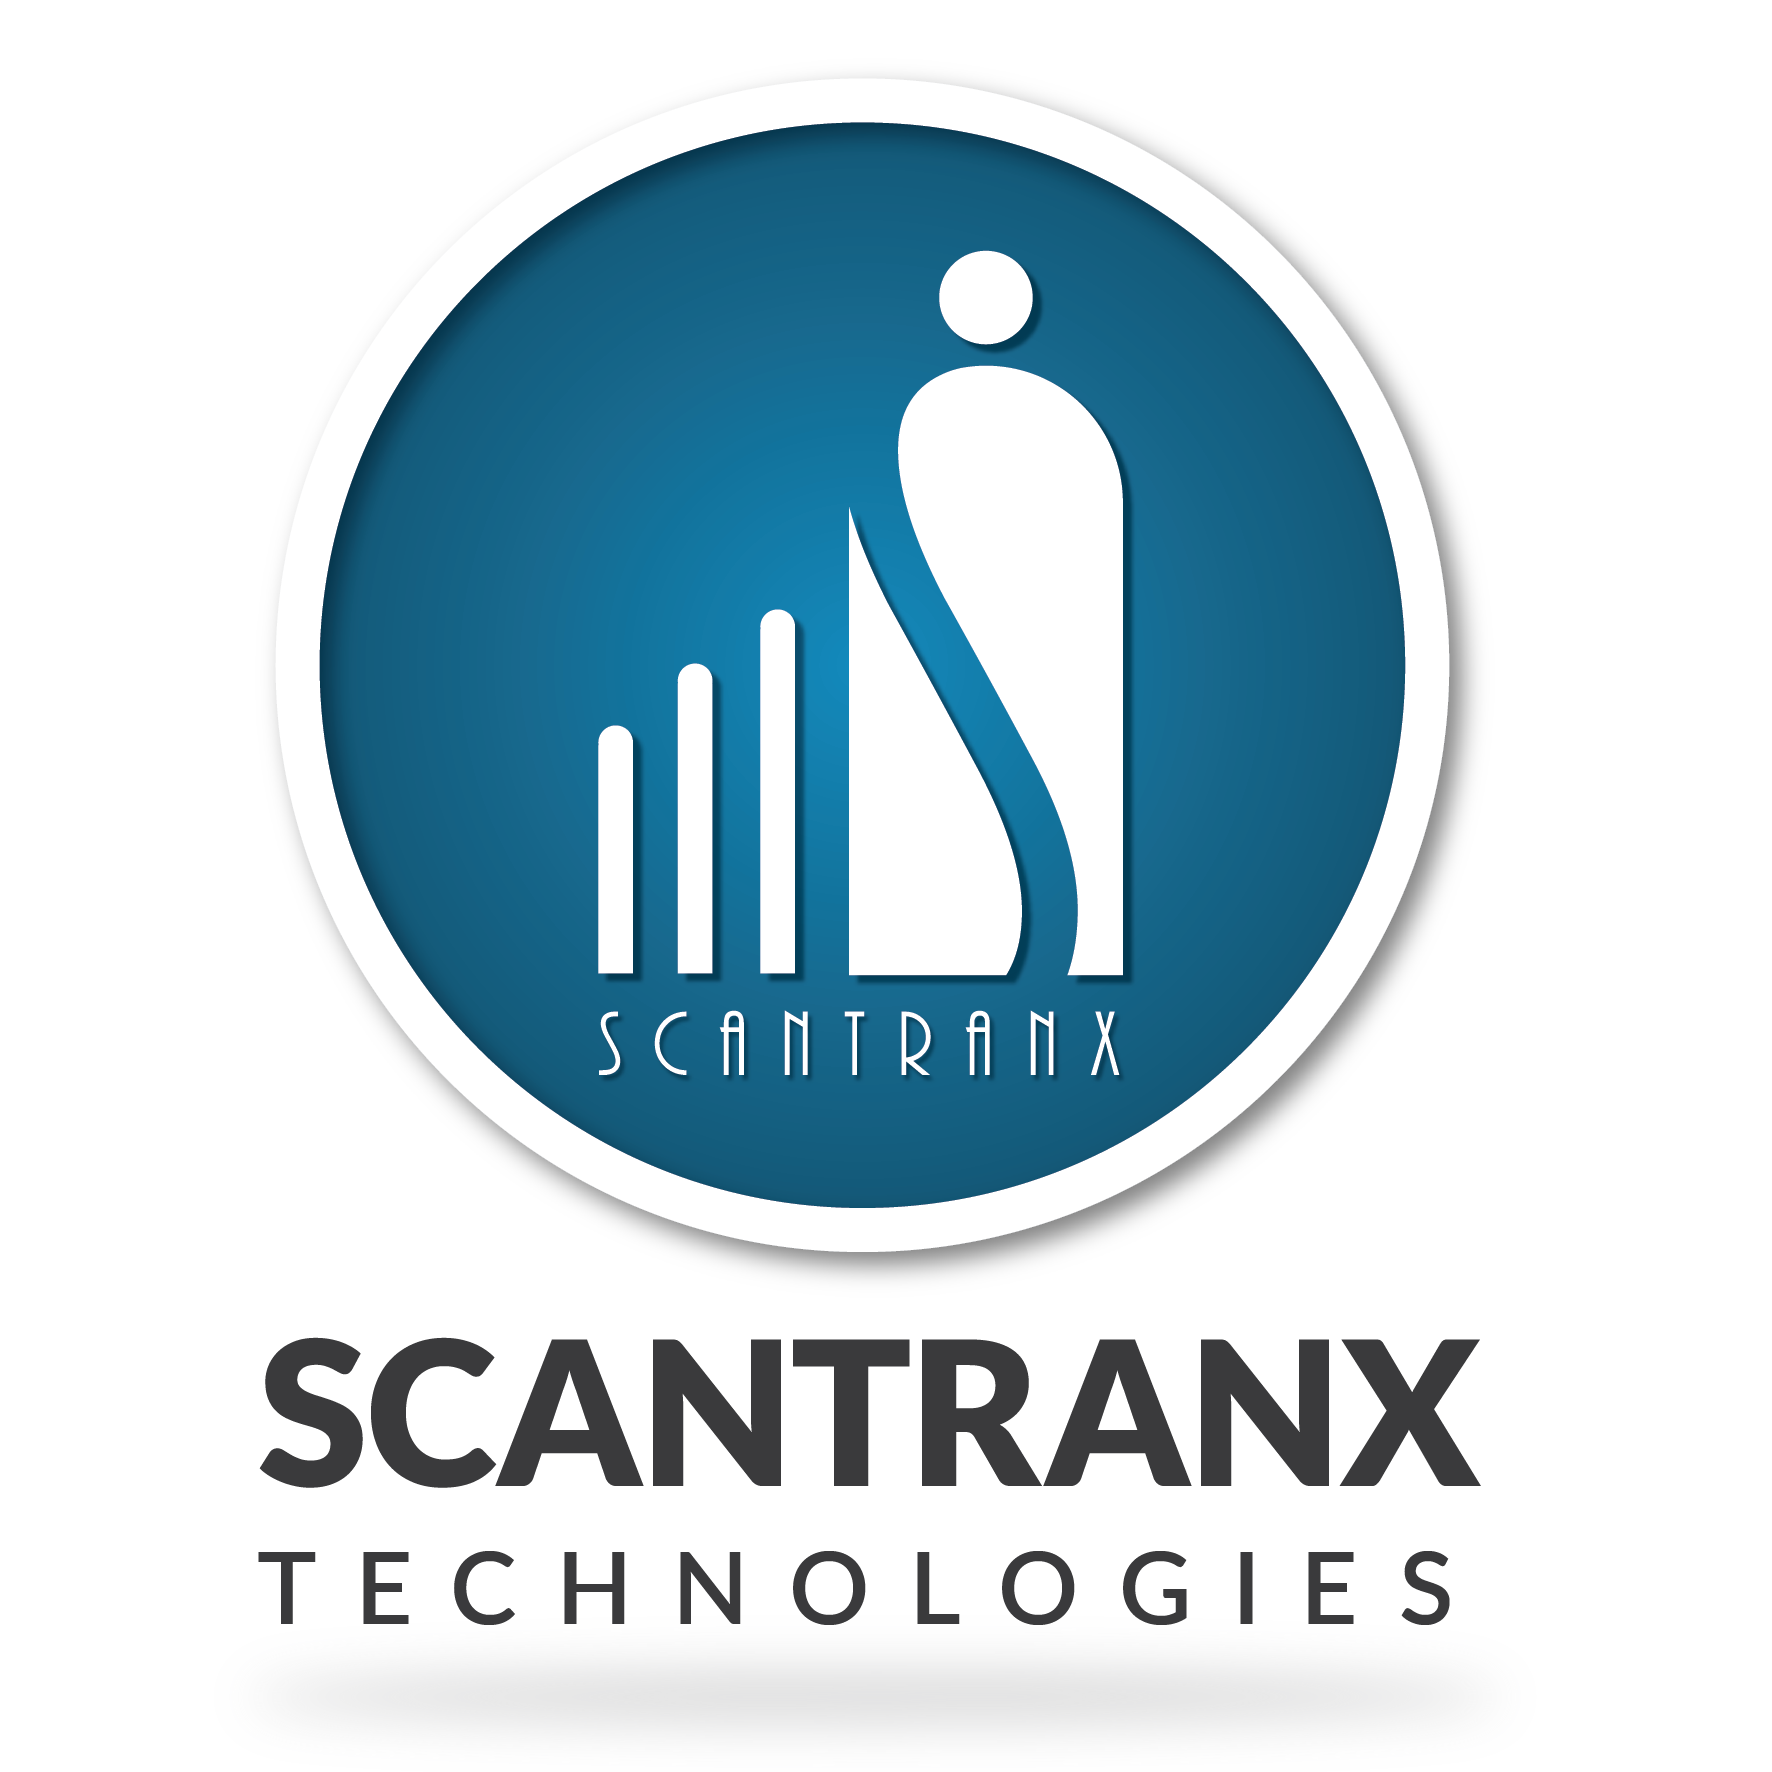 Scantranx